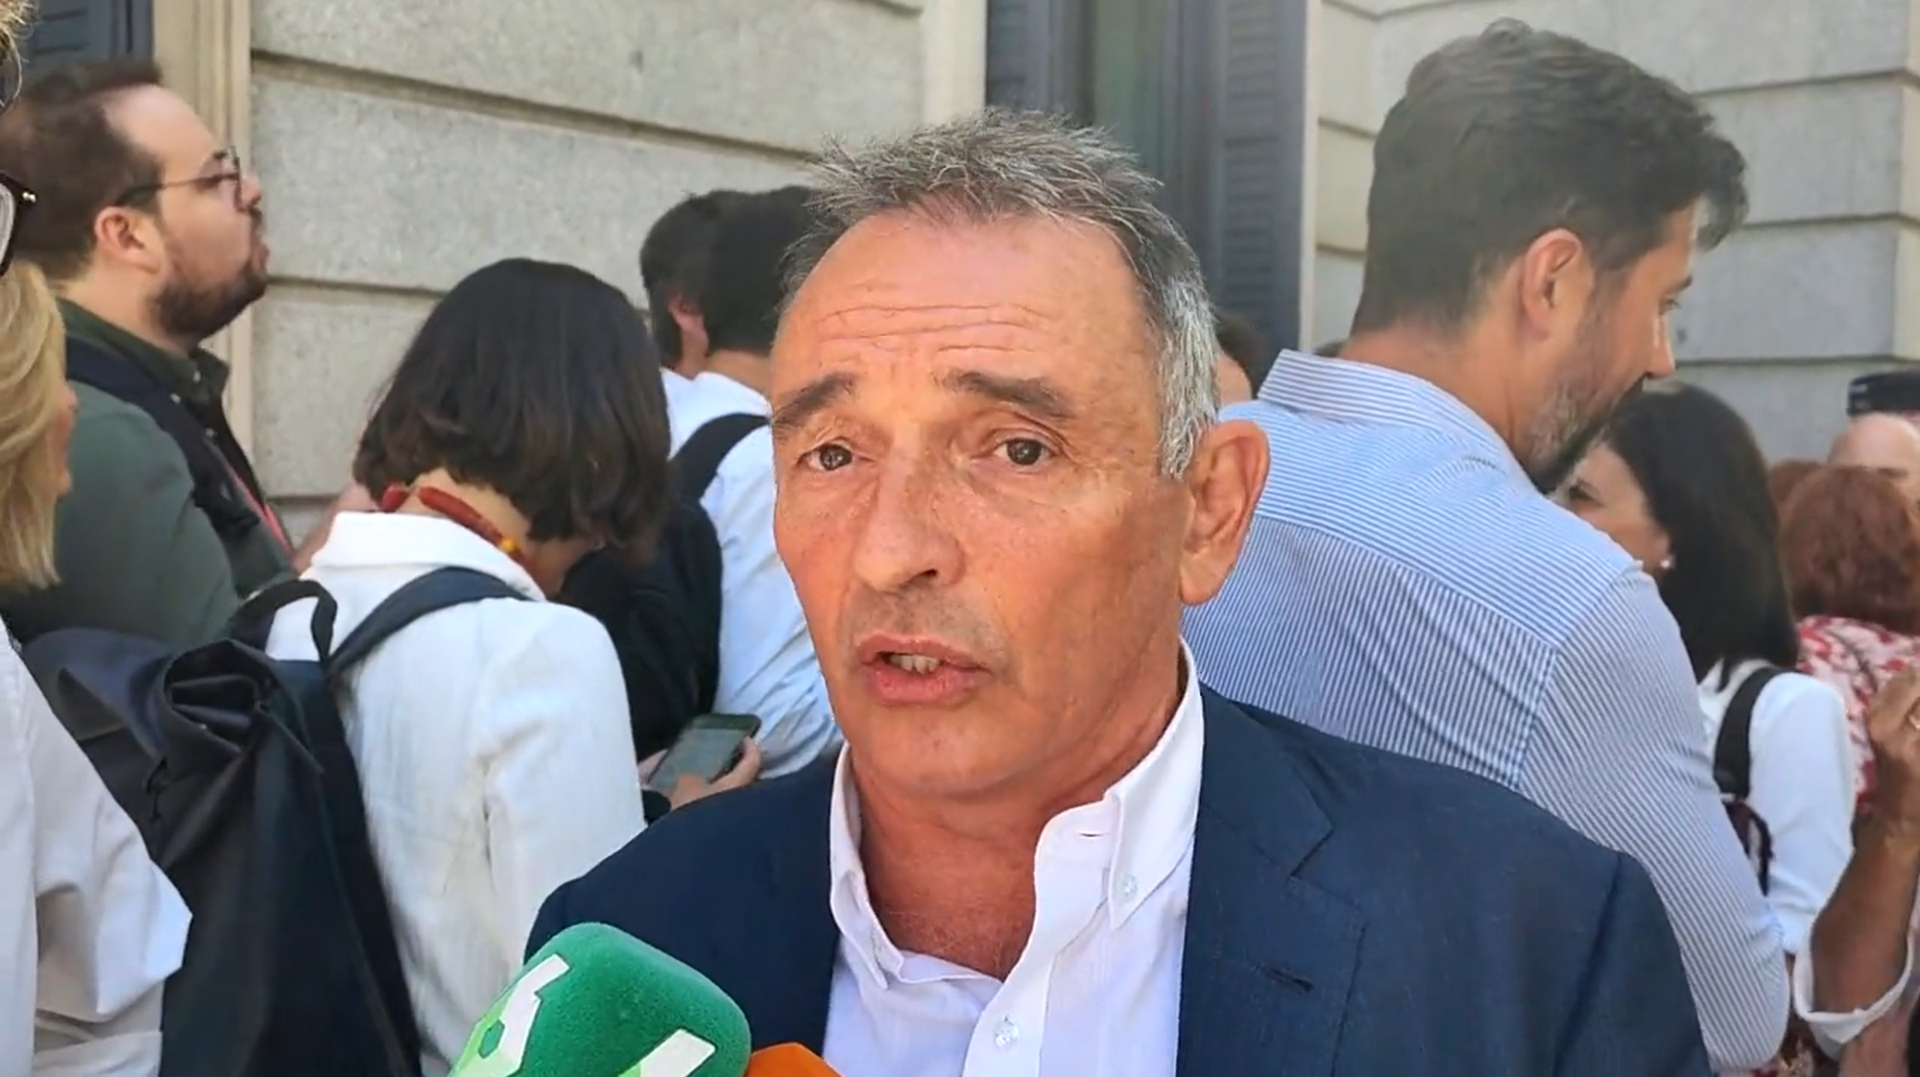 El portavoz parlamentario de IU, Enrique Santiago, se enfrentará a la ministra Sira Rego en la candidatura de Antonio Maíllo